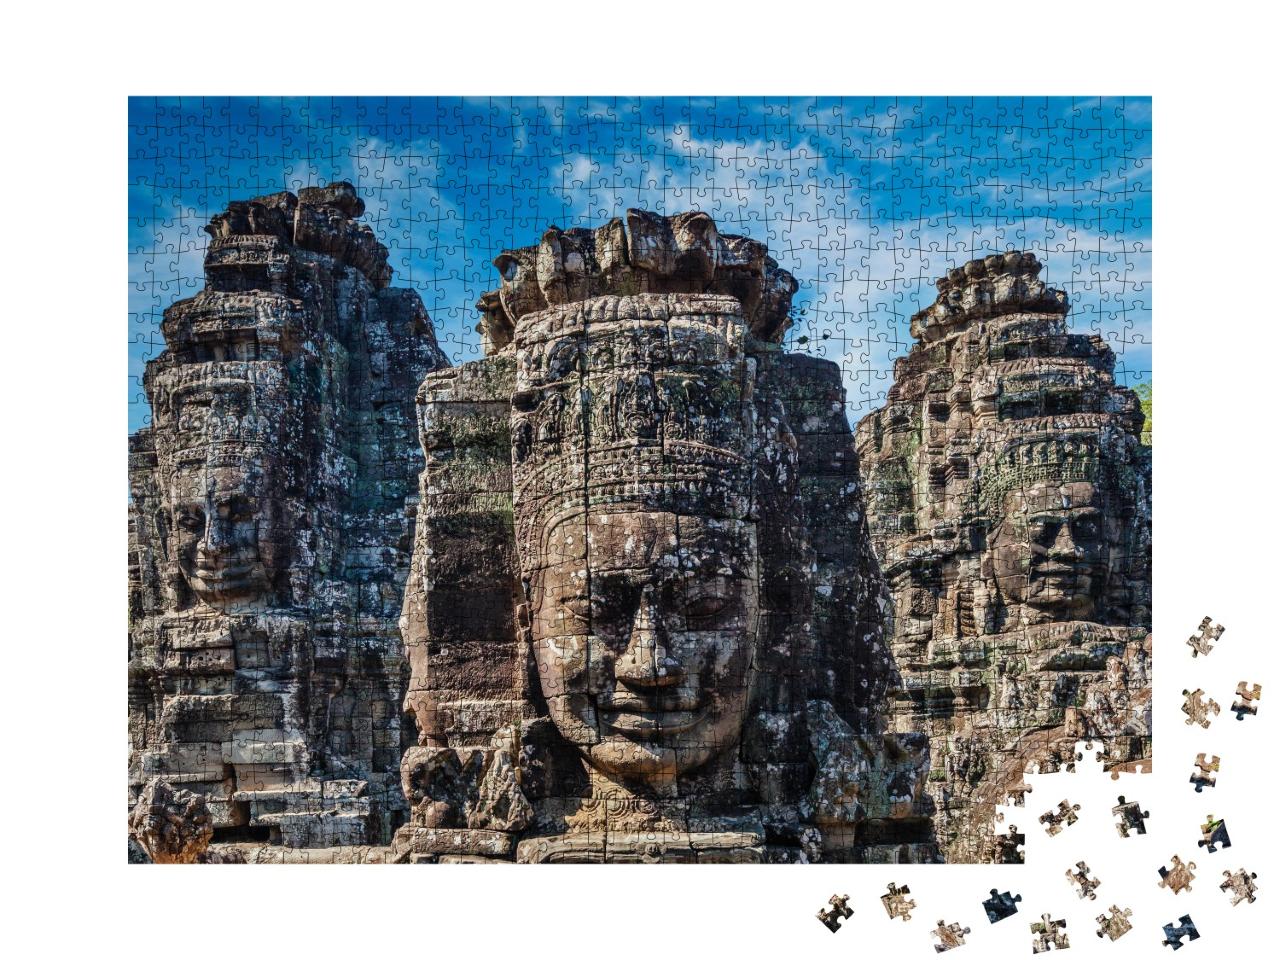 Puzzle 1000 Teile „Beeindruckende Steinwandskulpturen des Bayon-Tempels, Angkor, Kambodscha“